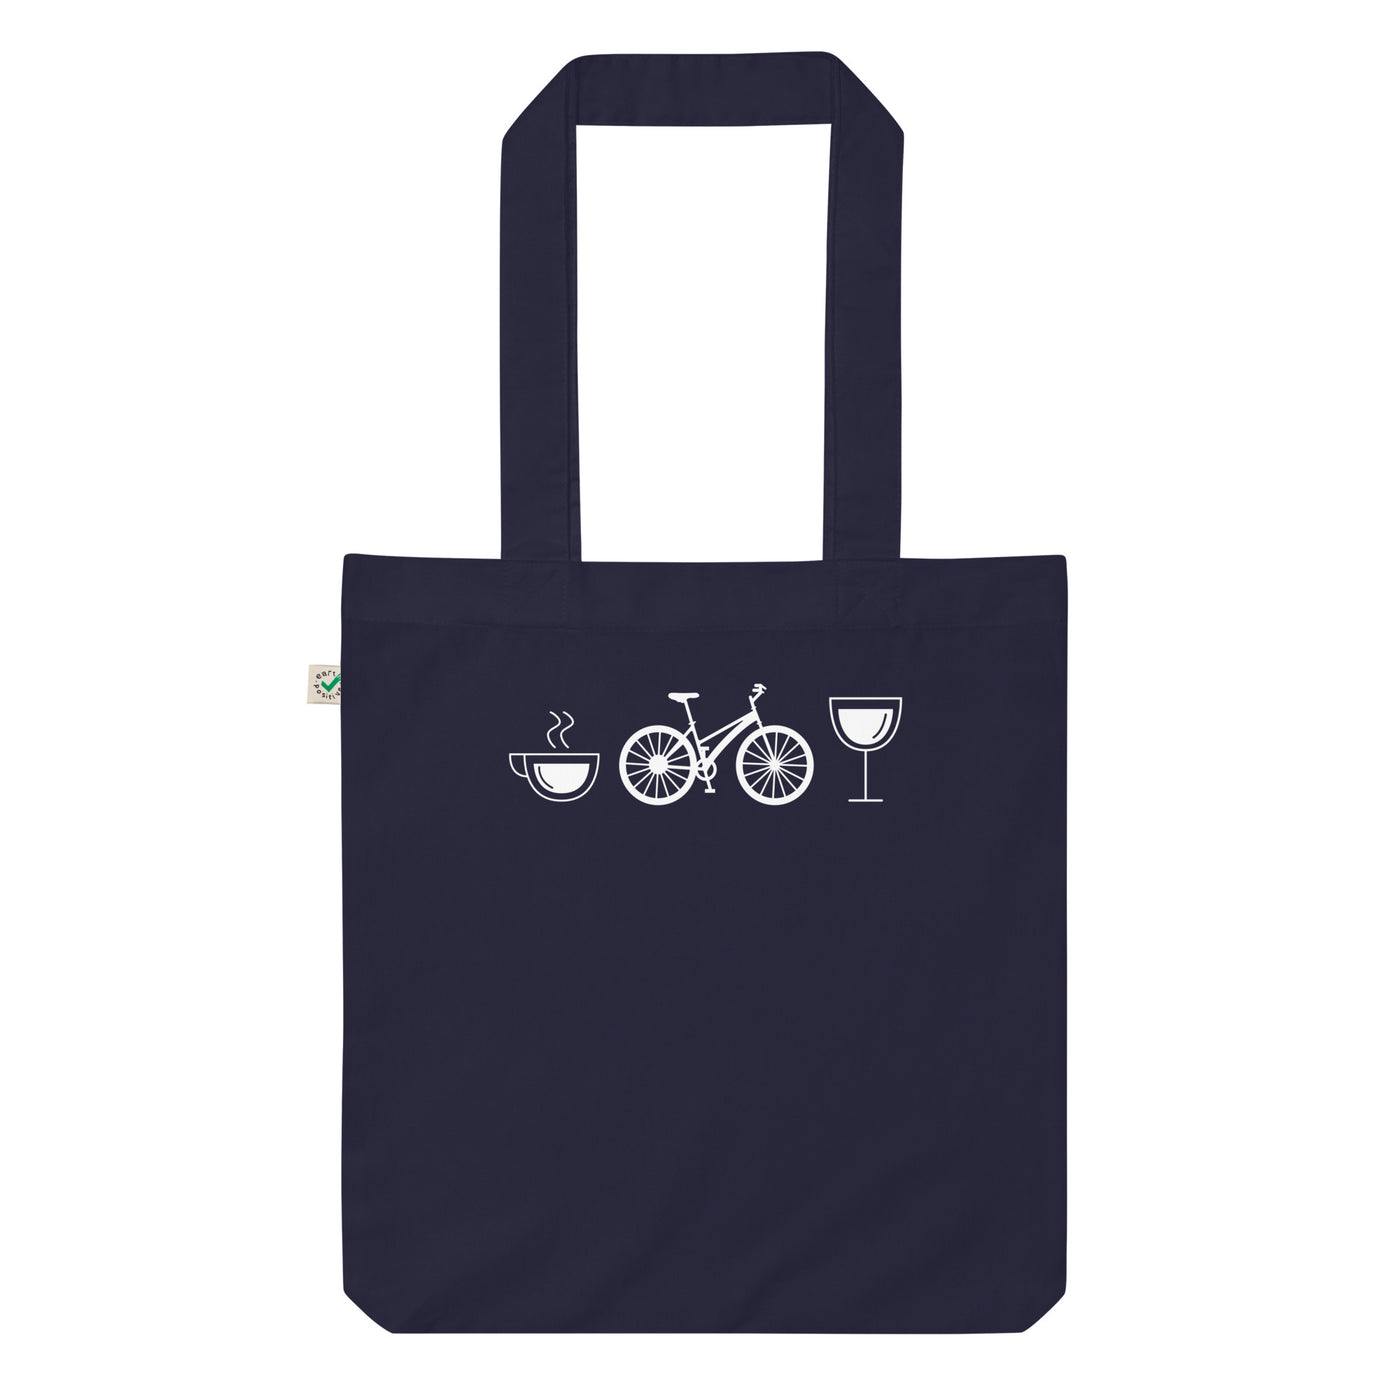 Kaffee, Wein Und Fahrrad - Organic Einkaufstasche fahrrad